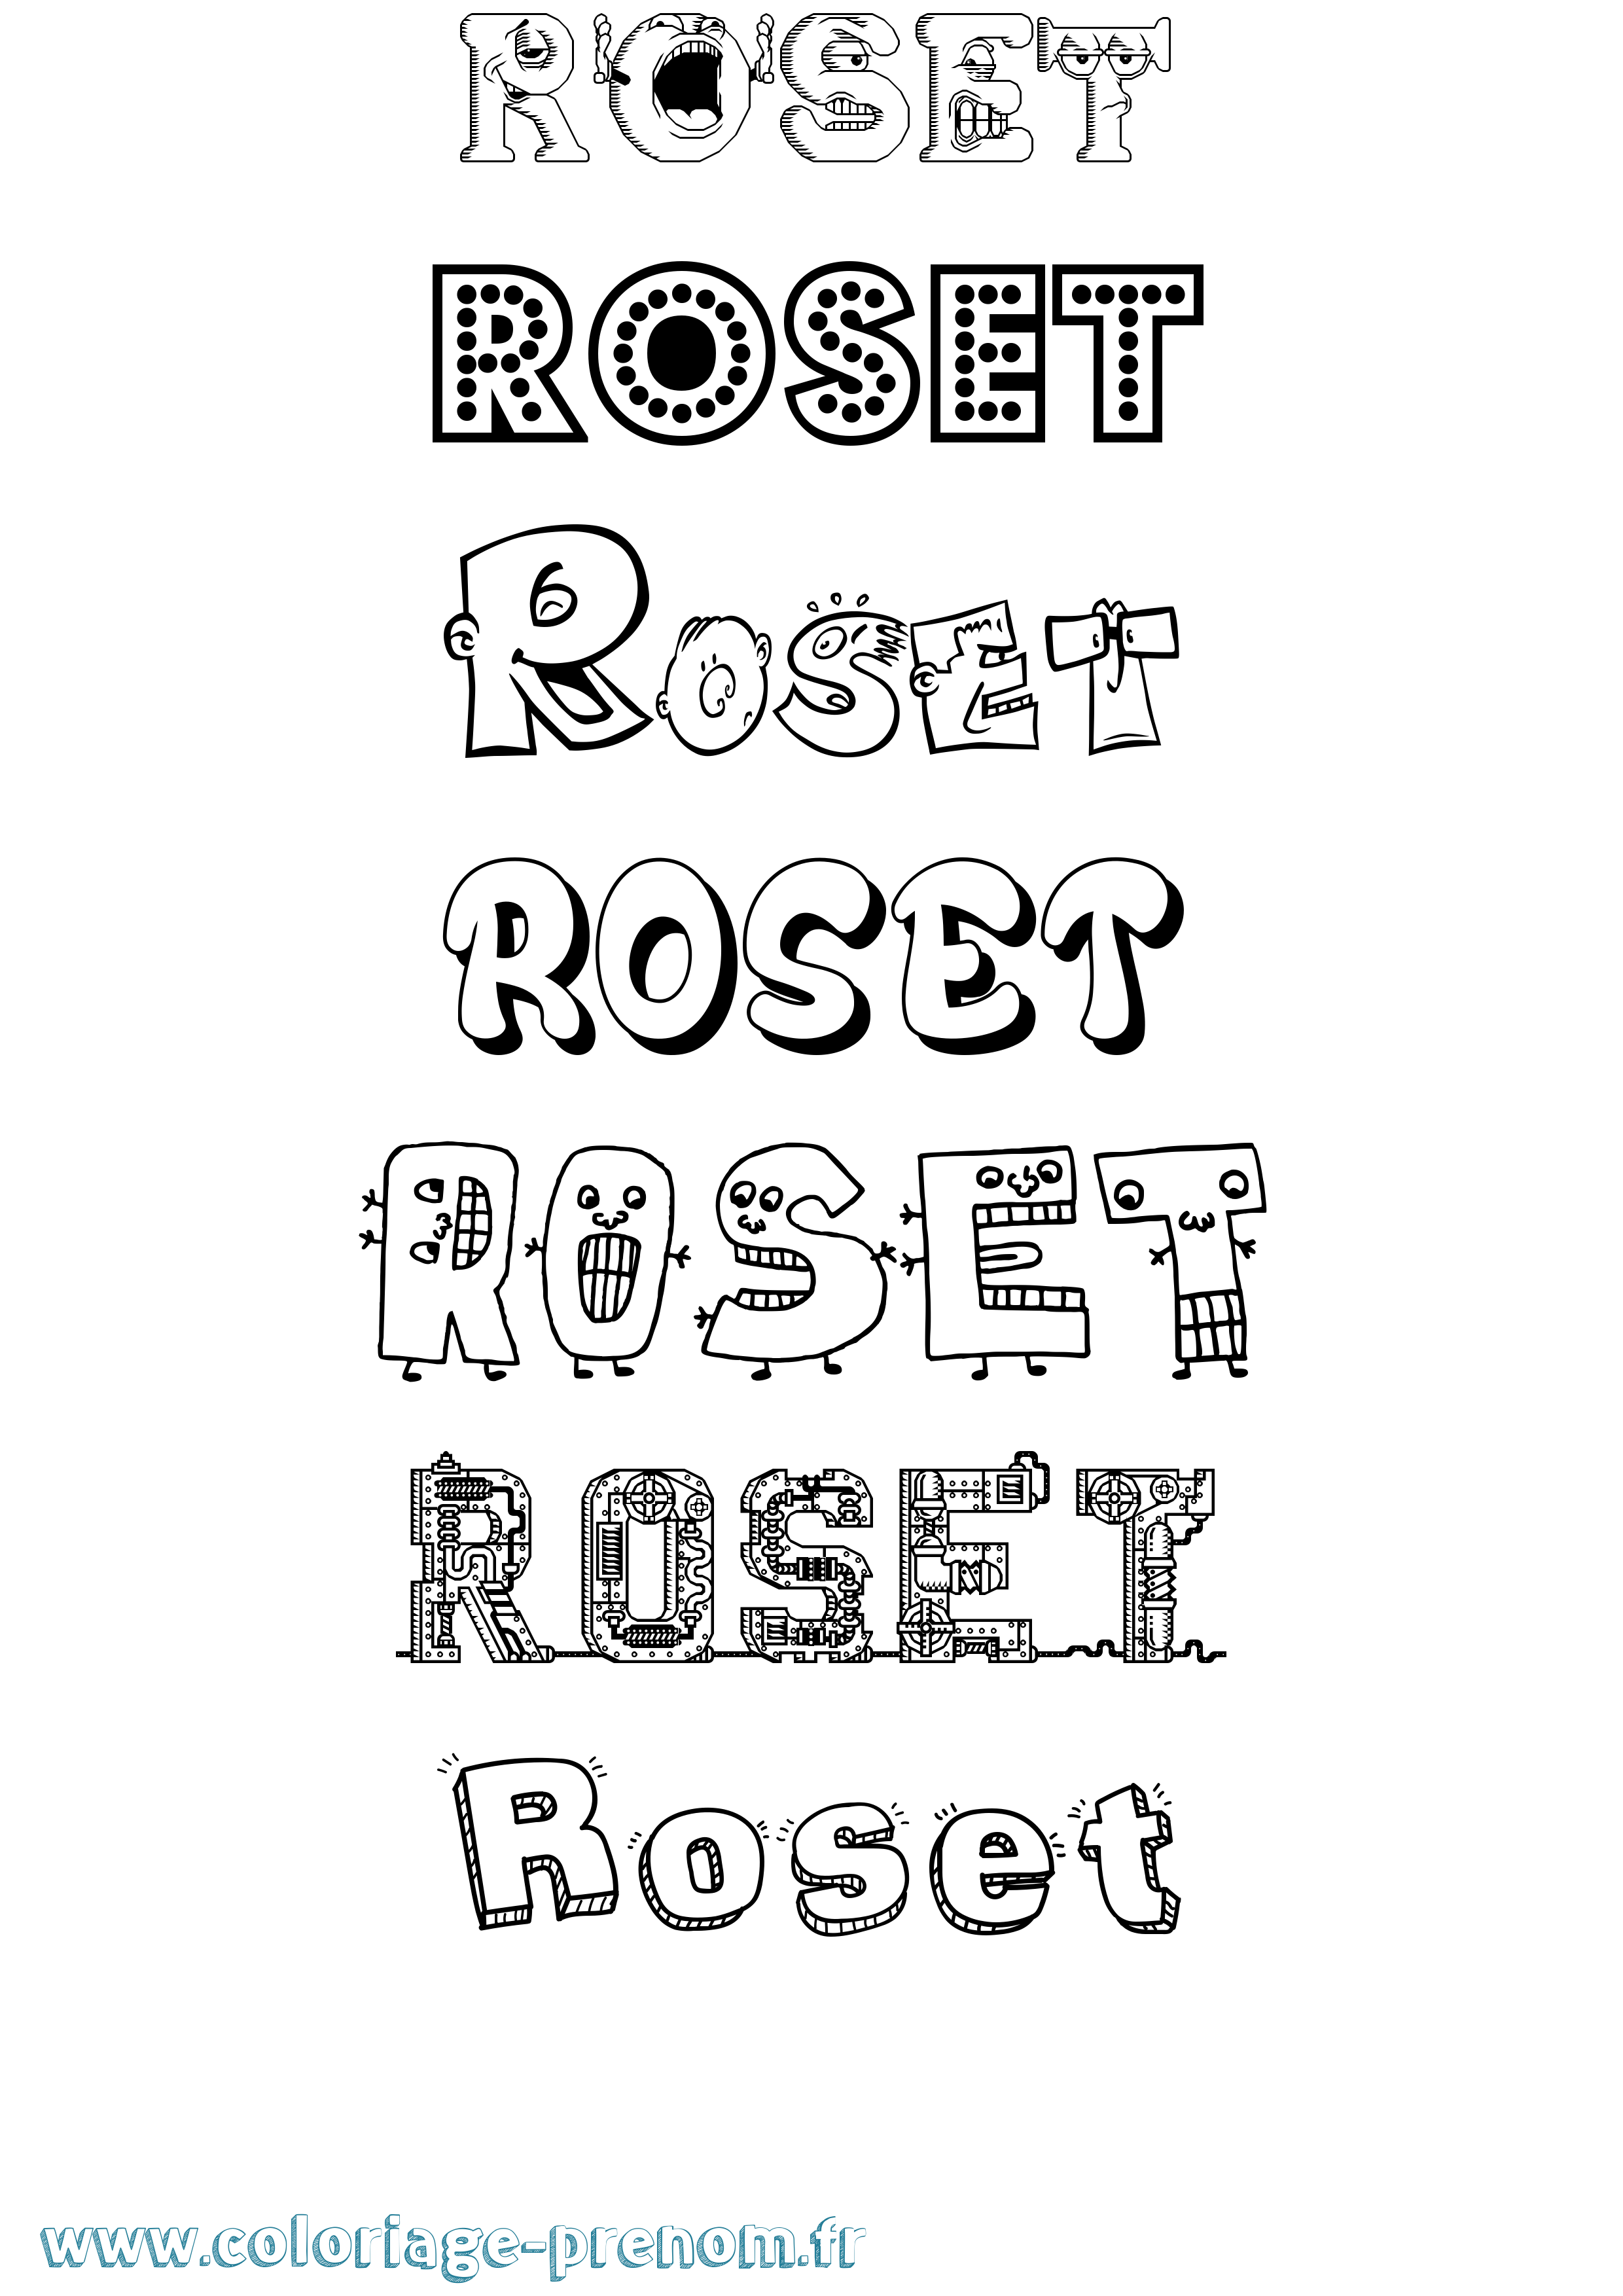 Coloriage prénom Roset Fun